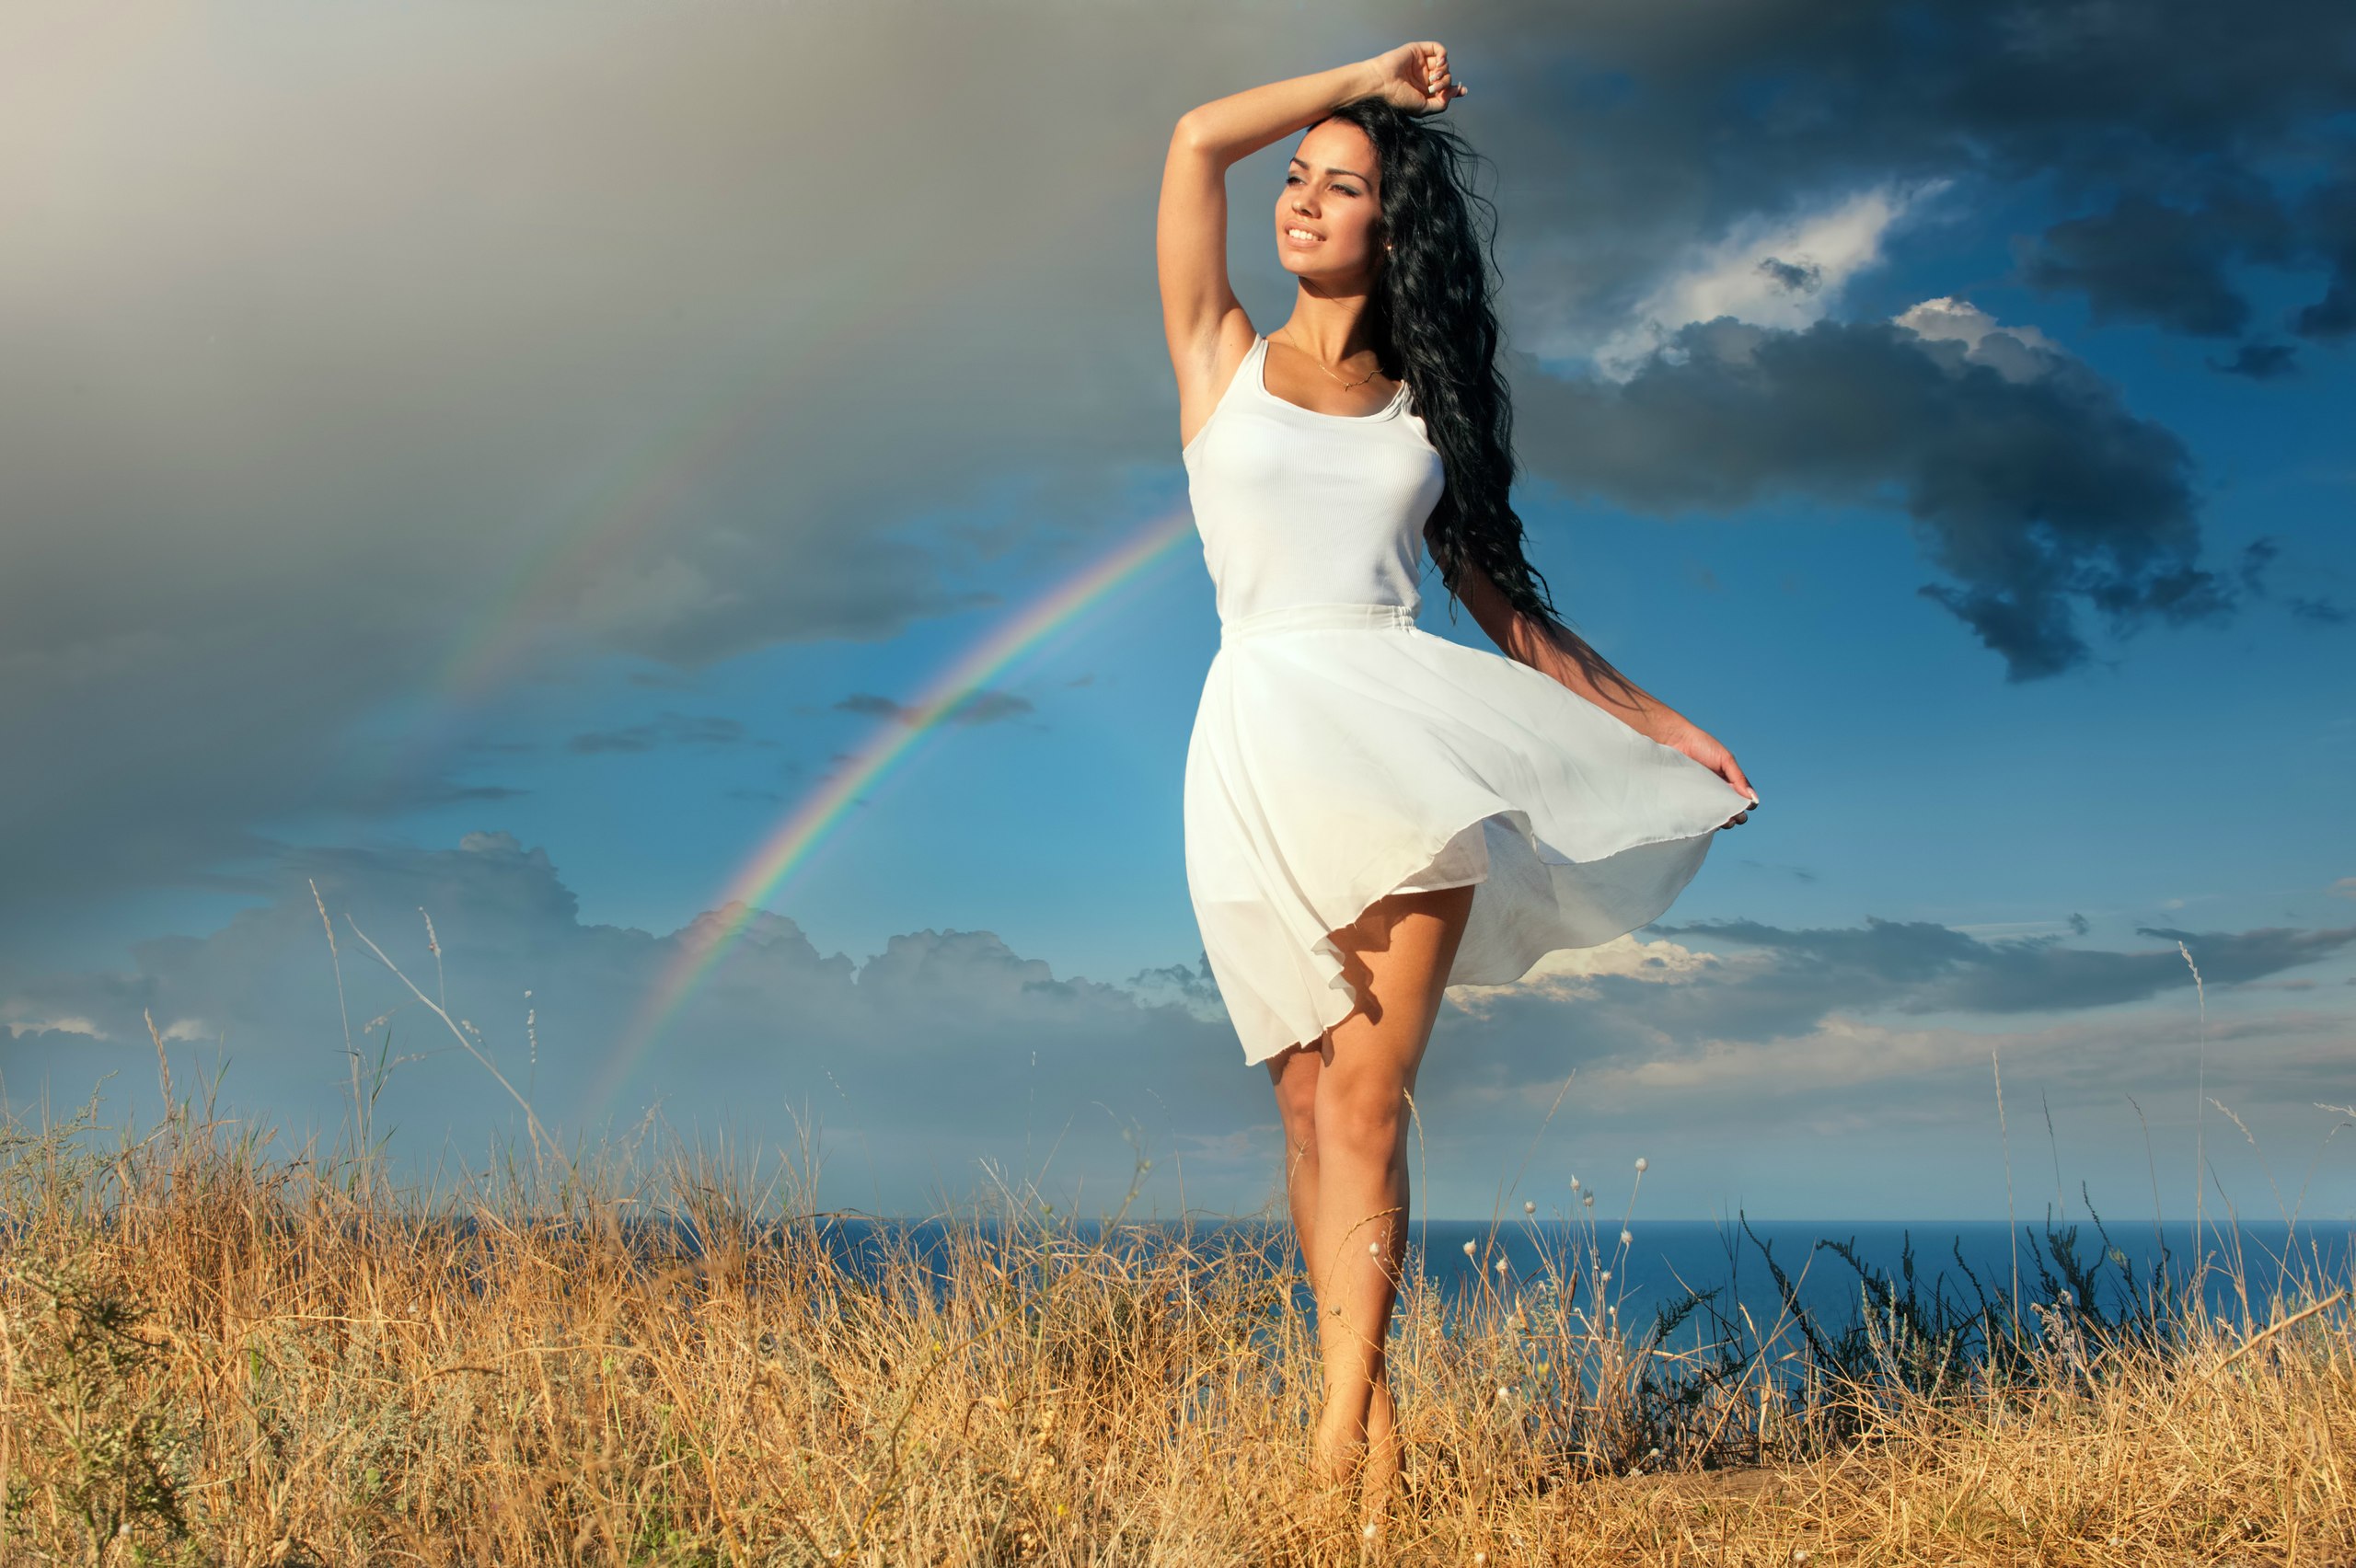 Девушка в белом платье стоит в поле на фоне неба в облаках и радуги